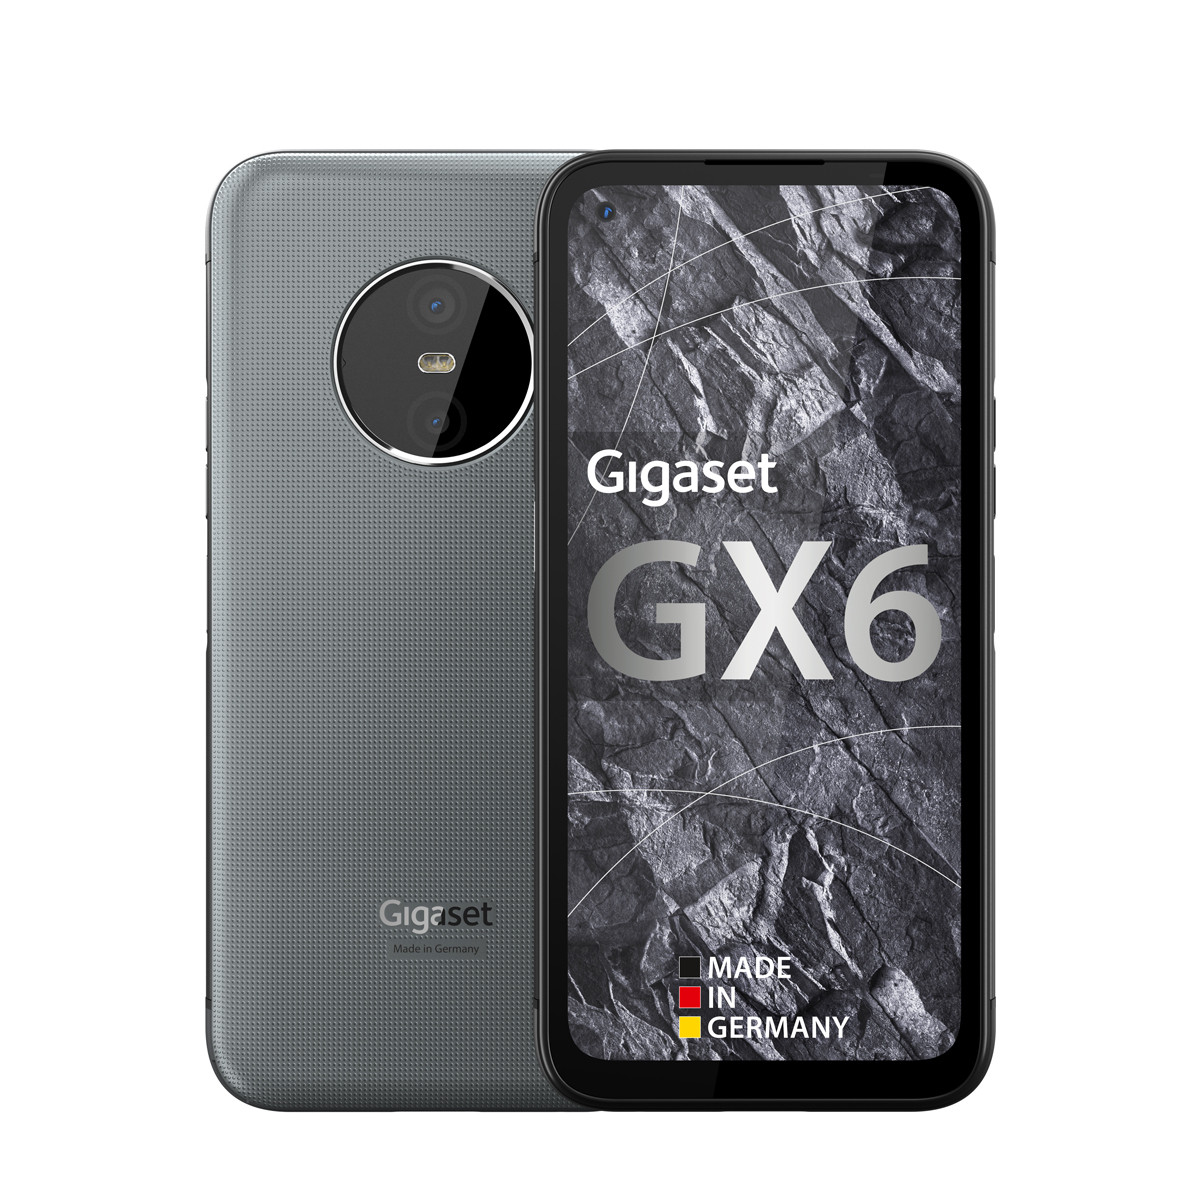 Gigaset GX6 Display Reparatur